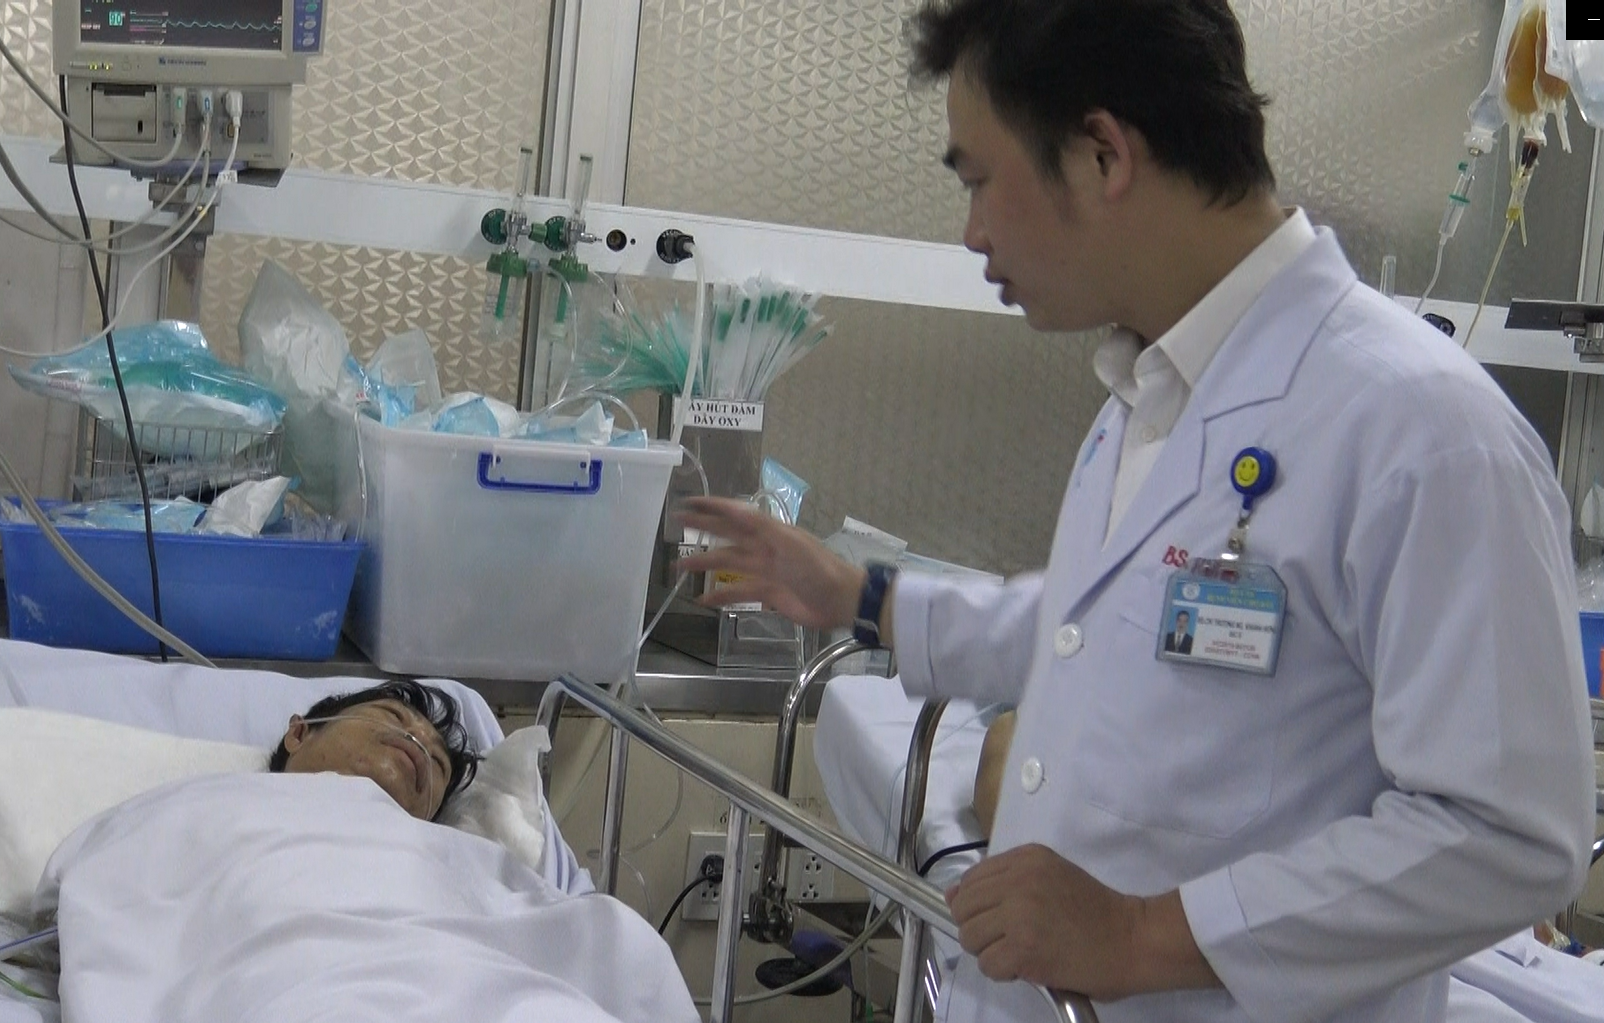 Nạn nhân bị hổ cắn hiện đang được cấp cứu tại Bệnh viện Chợ Rẫy, TP.HCM.